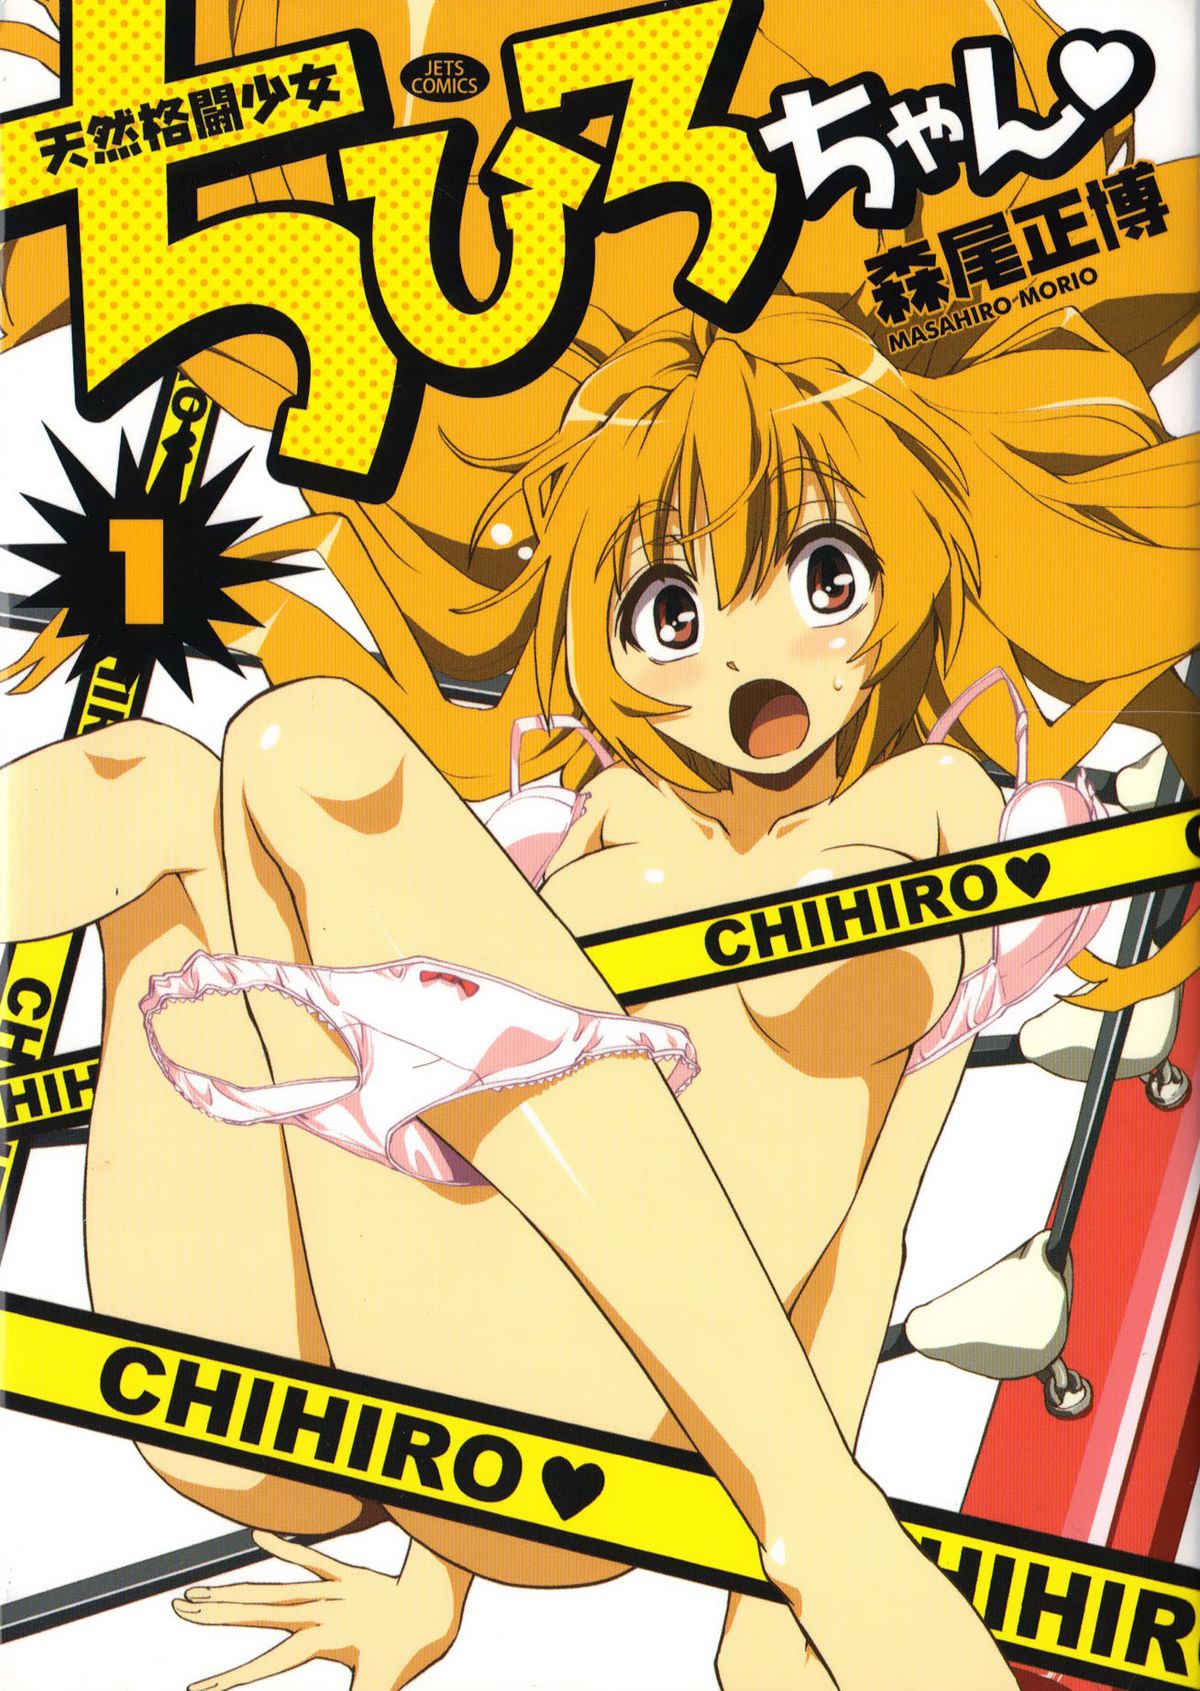 Enf naked manga